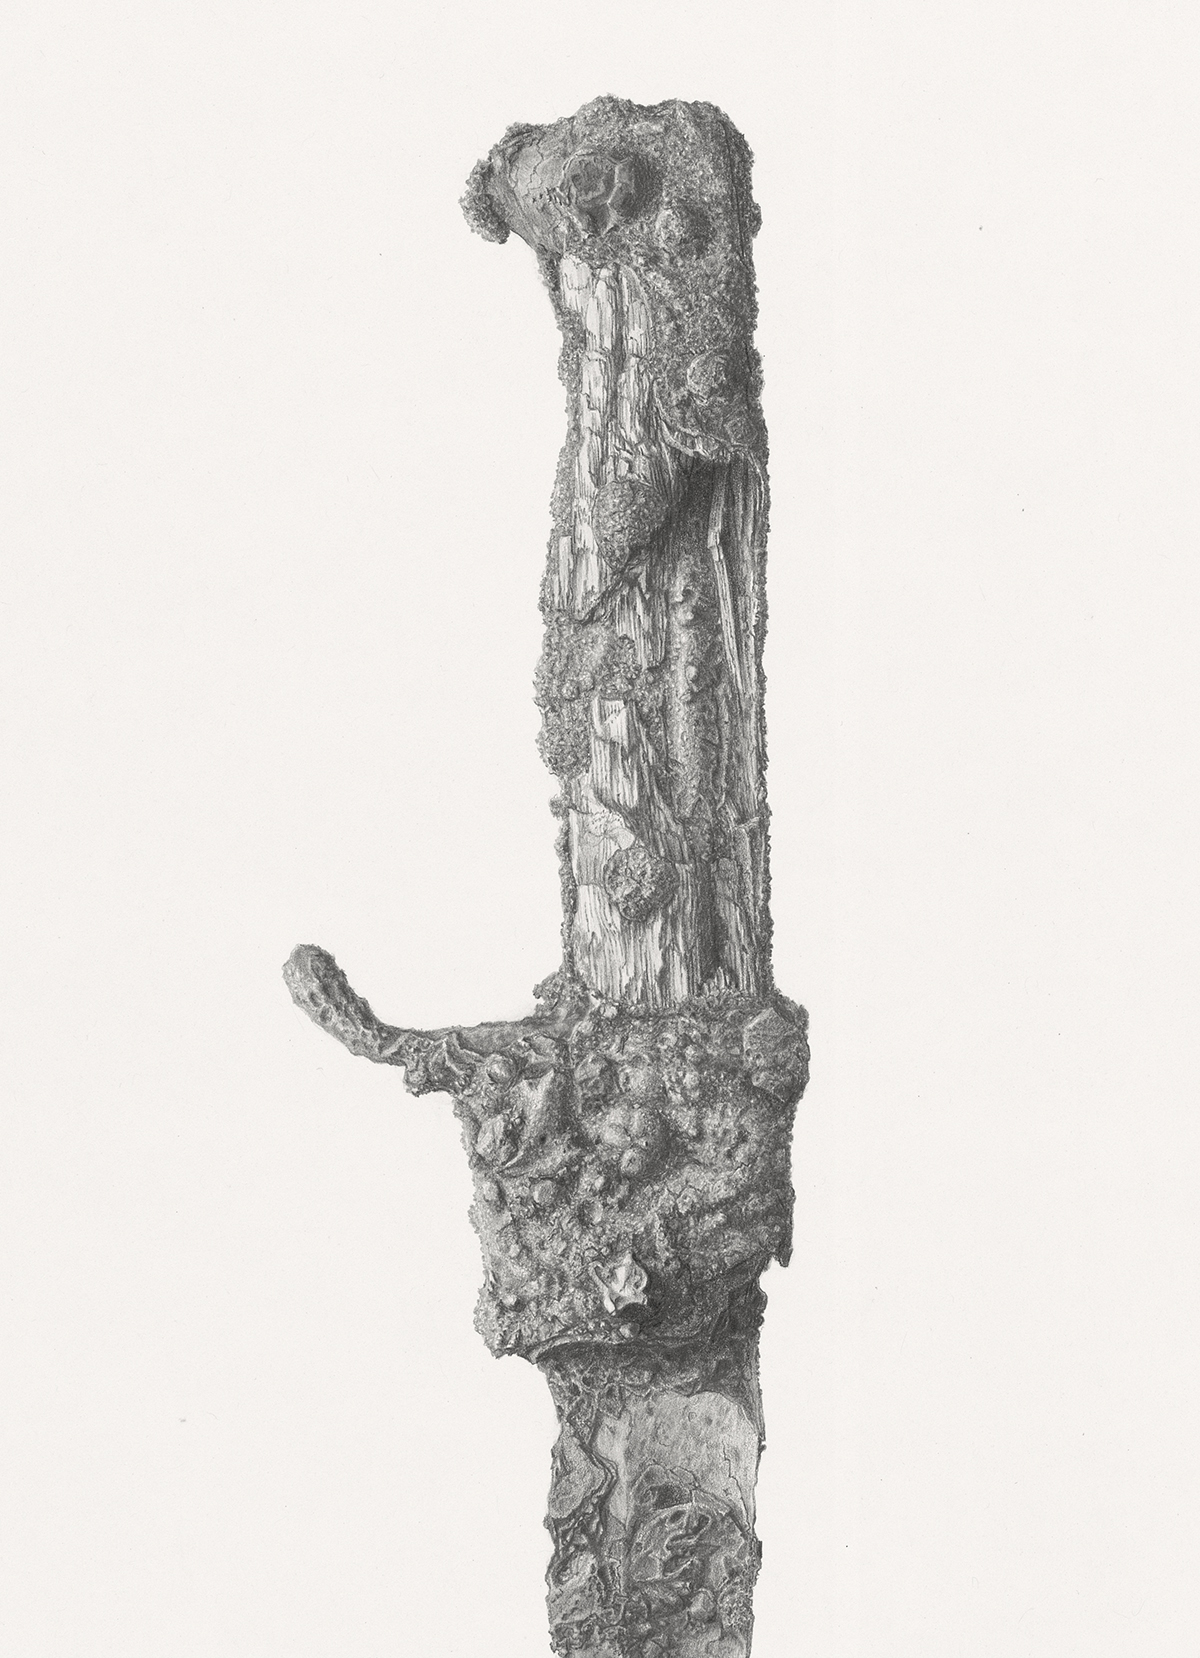 o.T. (Detail) / Bleistift auf Papier (pencil on paper) / 61 x 86 cm / 2013